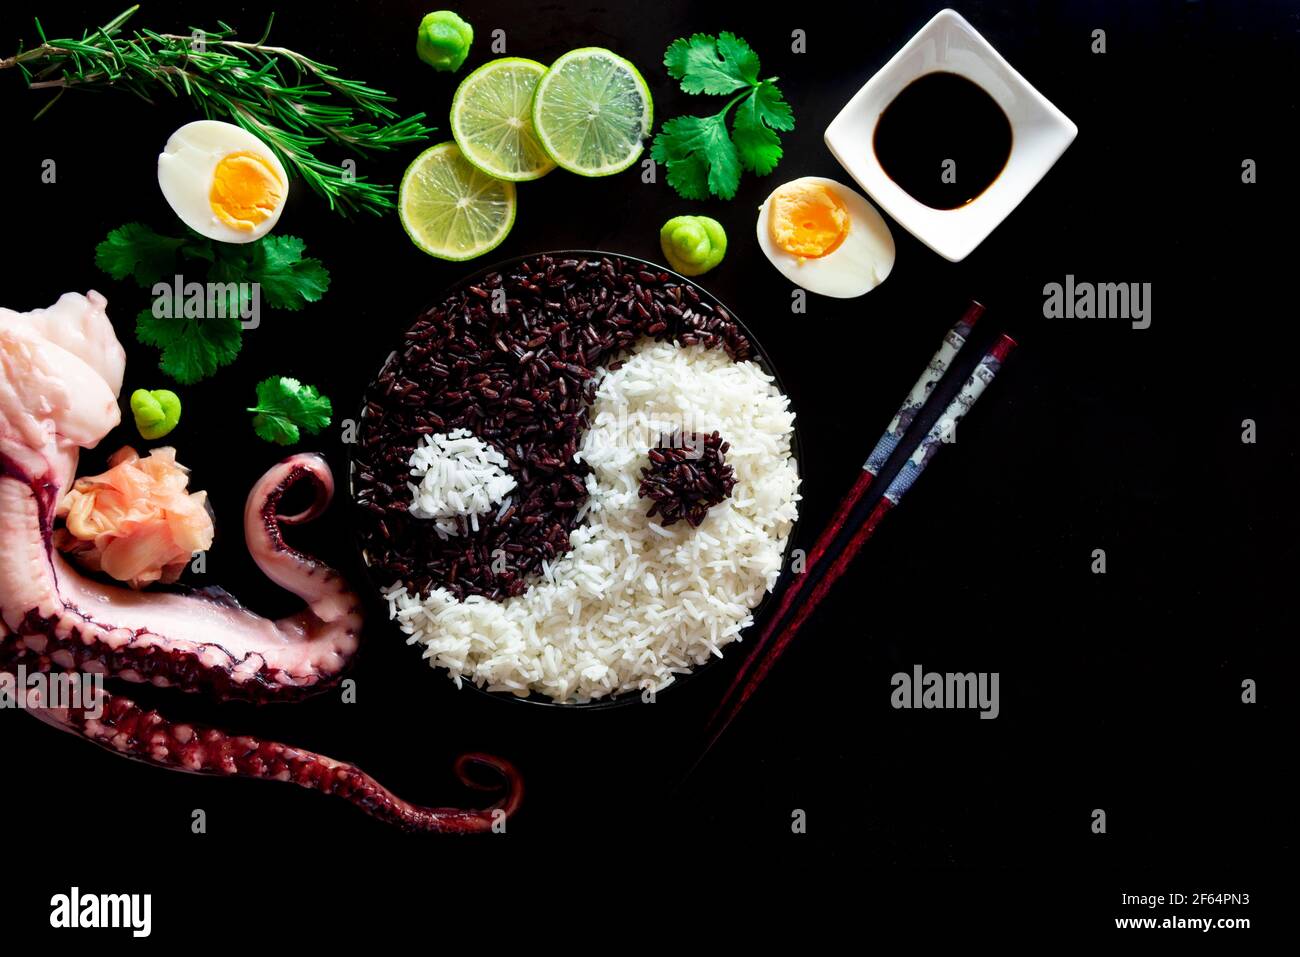 Eine Draufsicht auf eine Schüssel mit Yin Yang Reis, Essstäbchen, Limettenscheiben, gekochten Eiern, Sojasauce, Gewürze und Calamari Tentakeln auf schwarzem Hintergrund Stockfoto